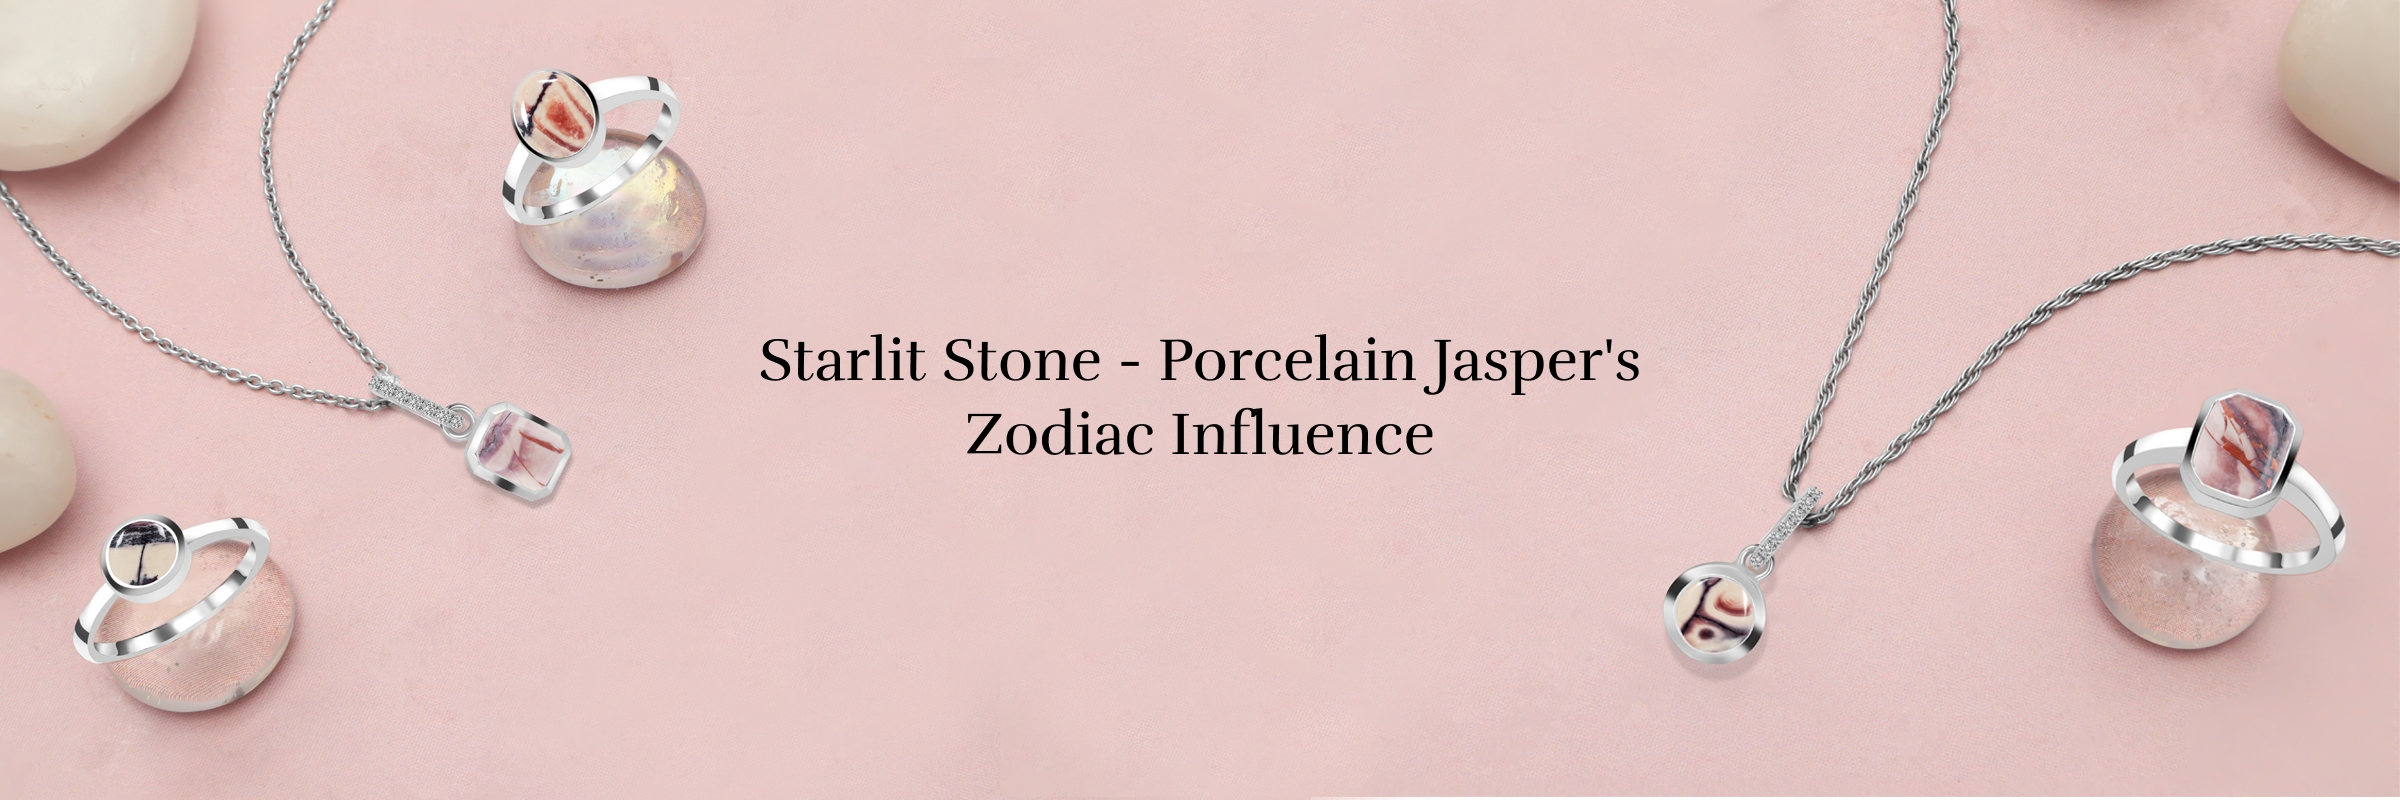 Porcelain Jasper Zodiac sign